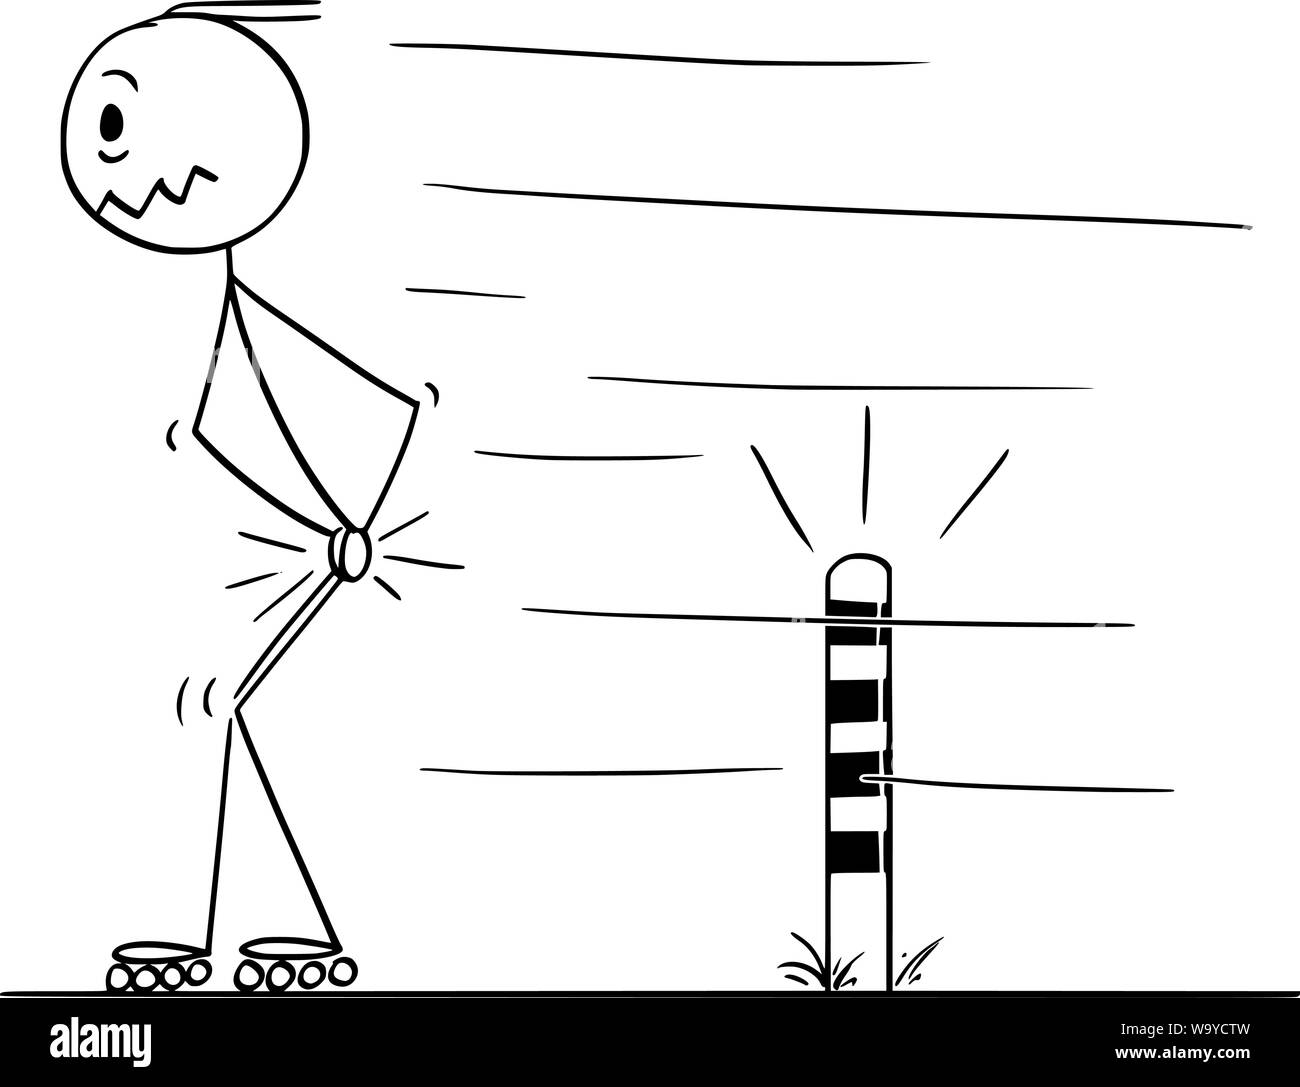 Vektor cartoon Strichmännchen Zeichnen konzeptionelle Darstellung des Menschen Skating auf Inline-skates und schmerzlich seine Hoden schlagen, wenn durch kleine Post auf der Straße. Stock Vektor